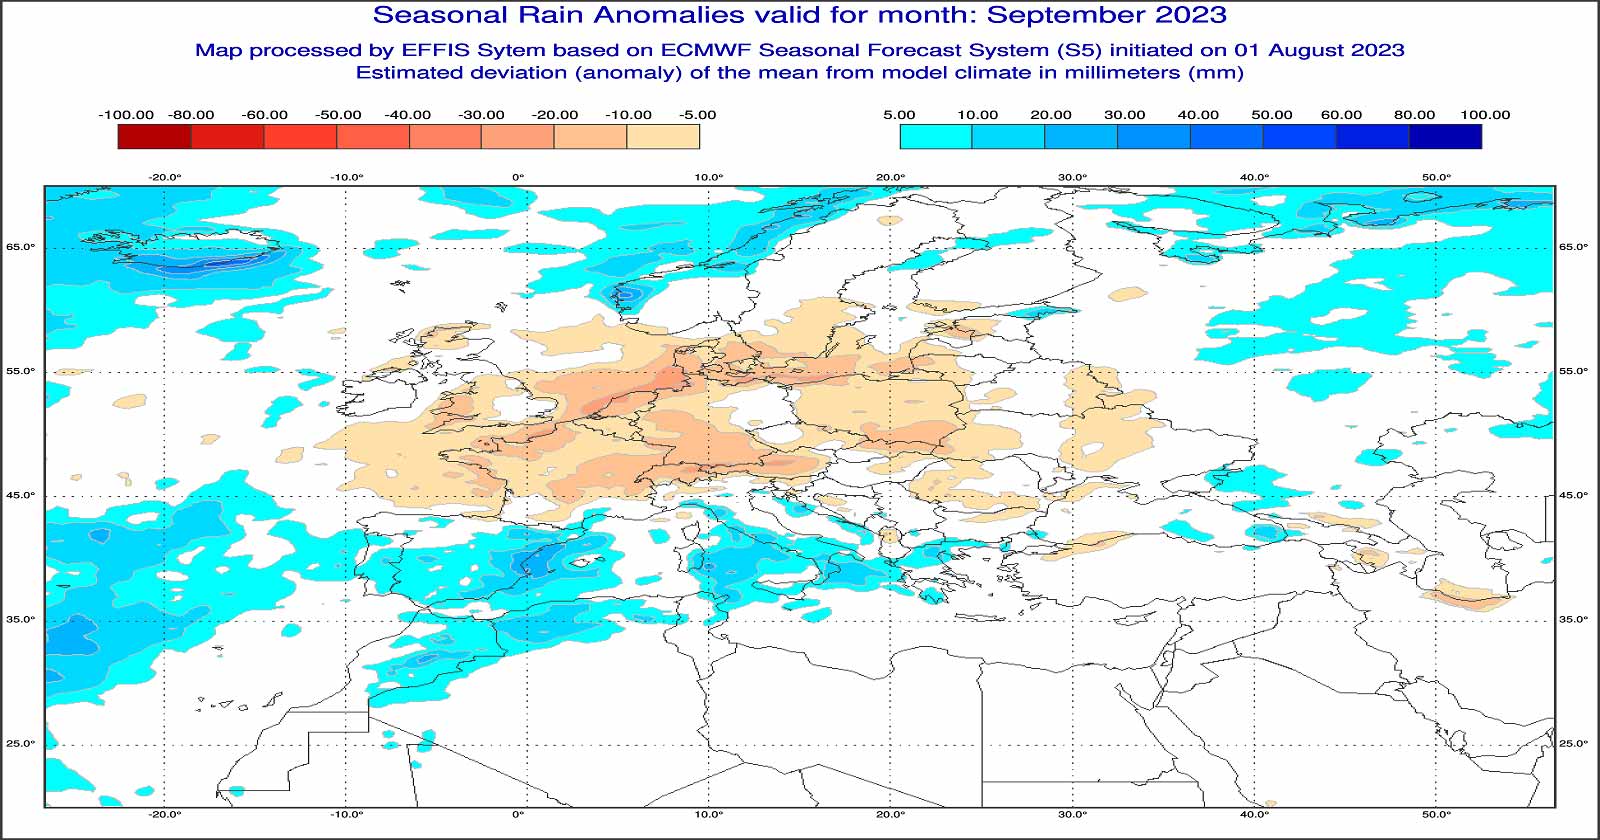 Anomalie di precipitazione previste dal modello europeo per settembre 2023 - effis.jrc.ec.europa.eu.eu